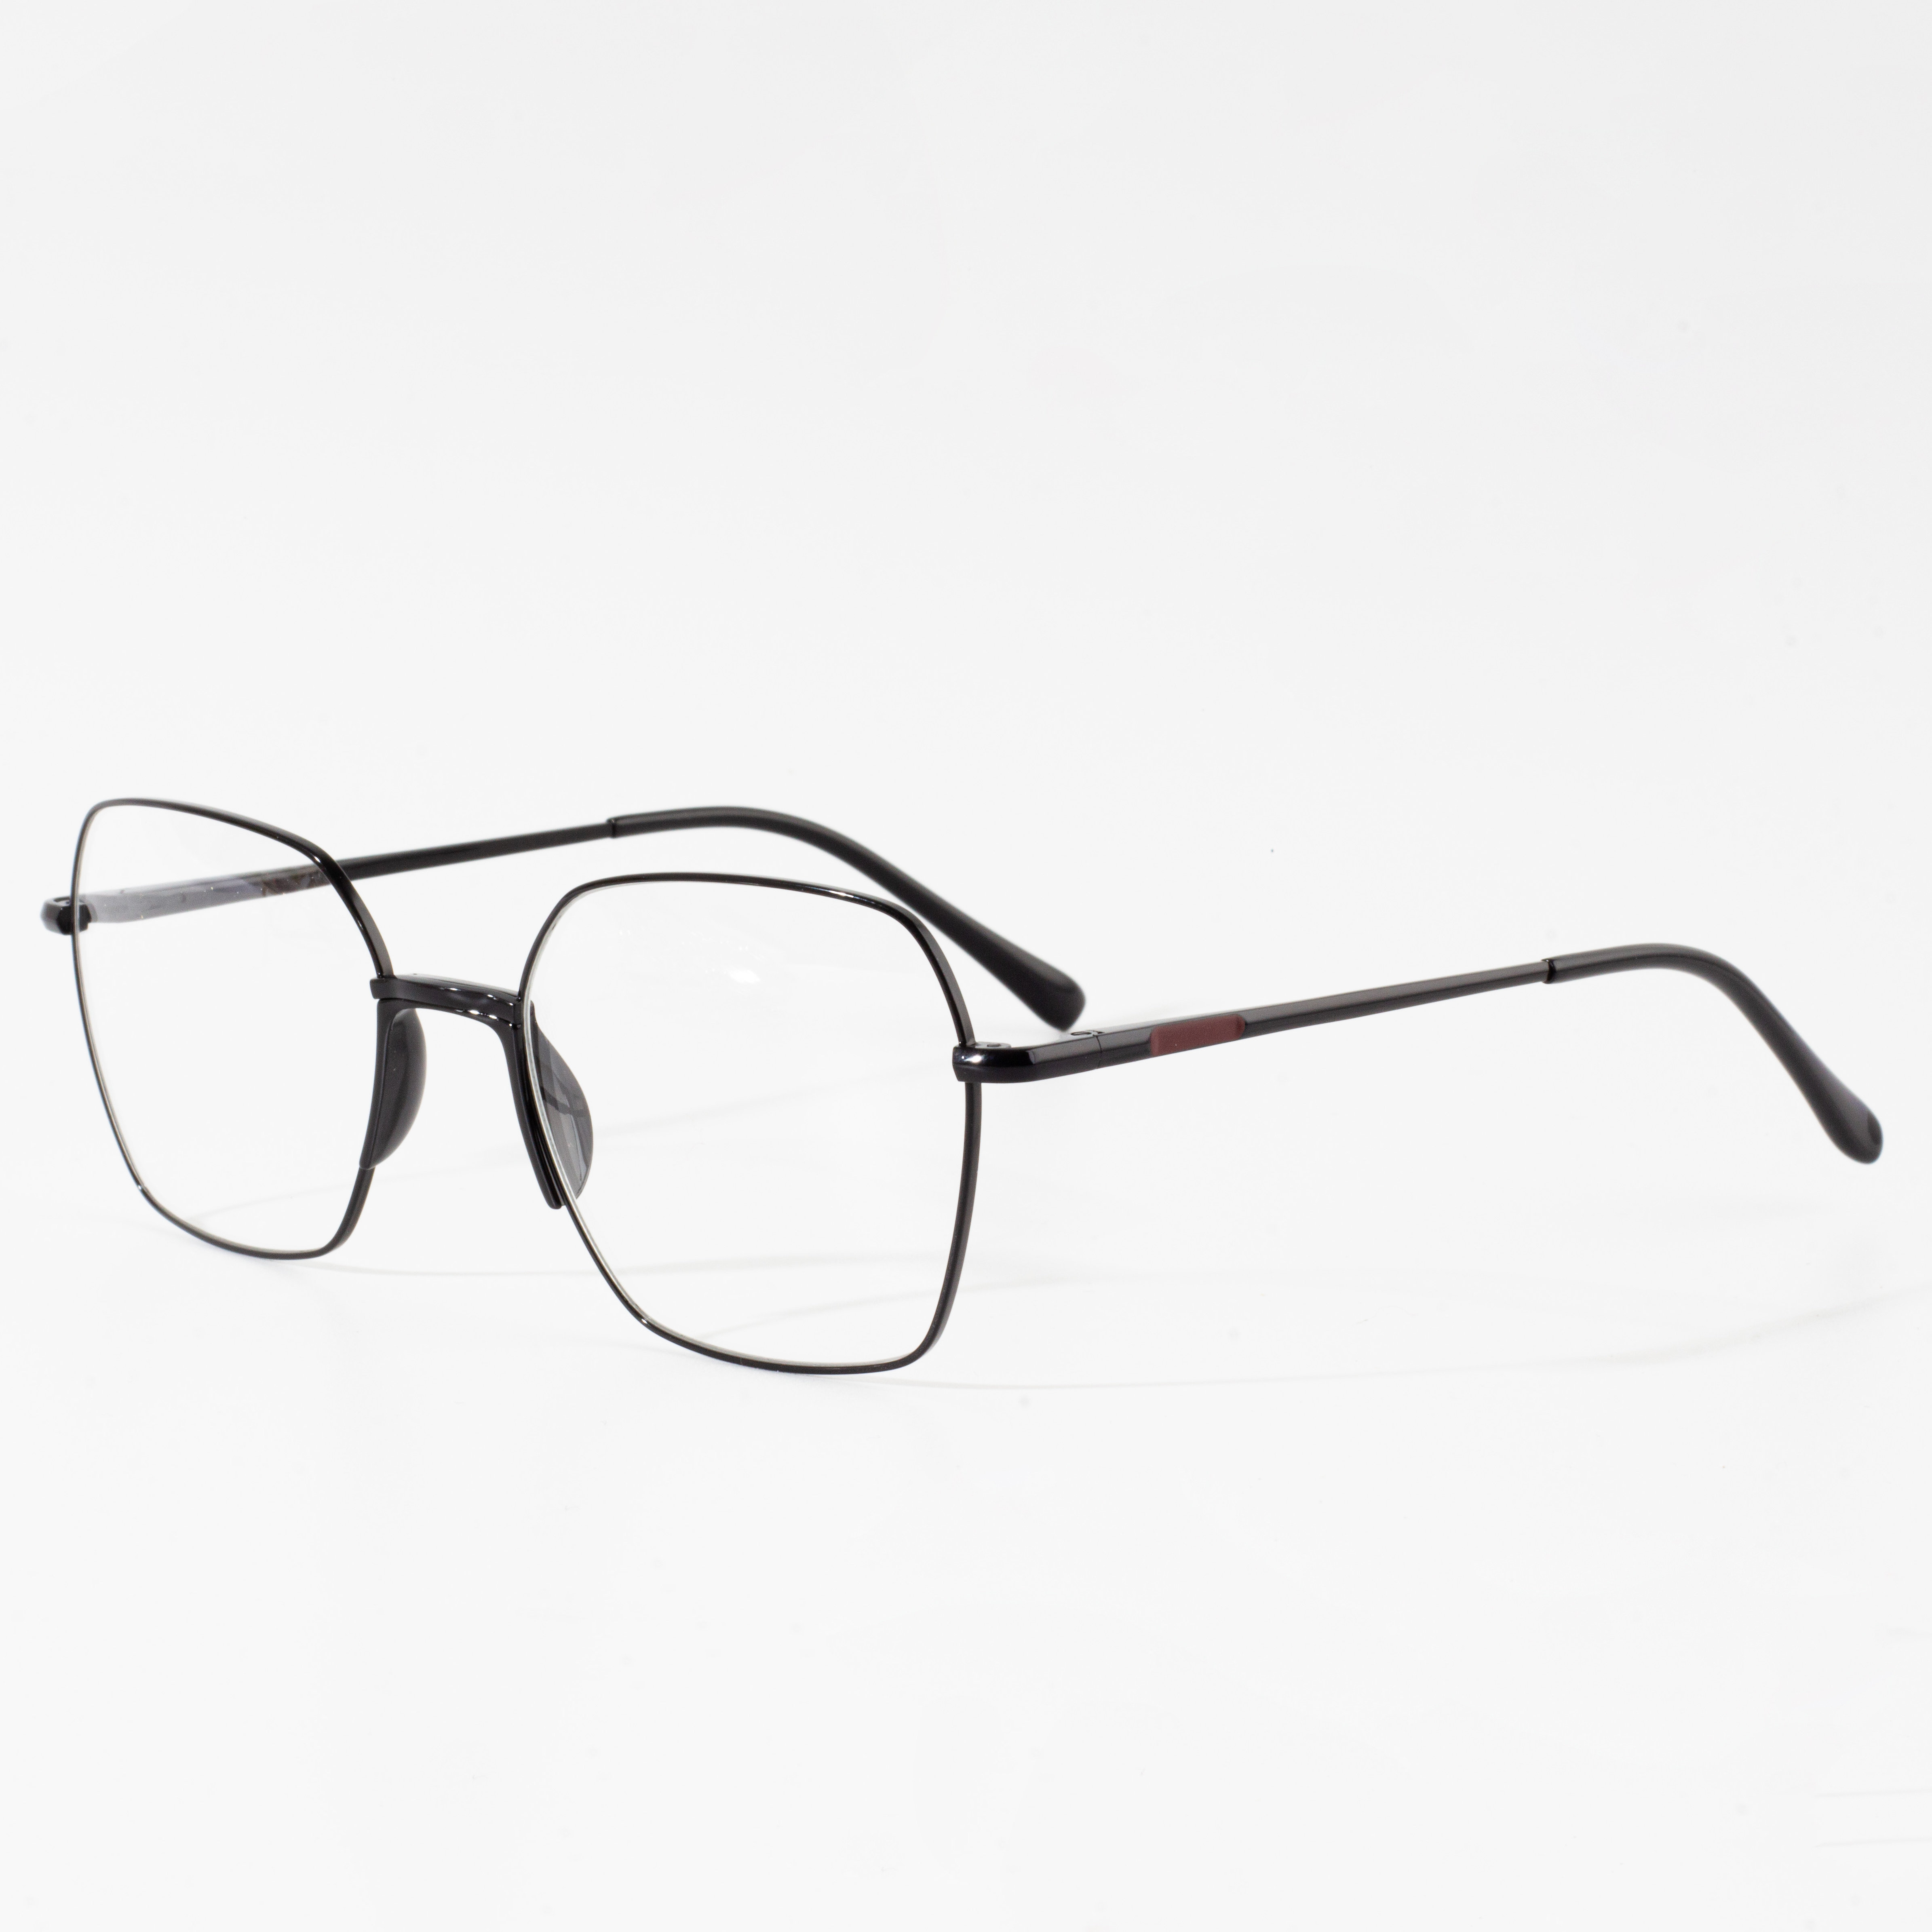 velkoobchodní prodej klasických optických brýlí